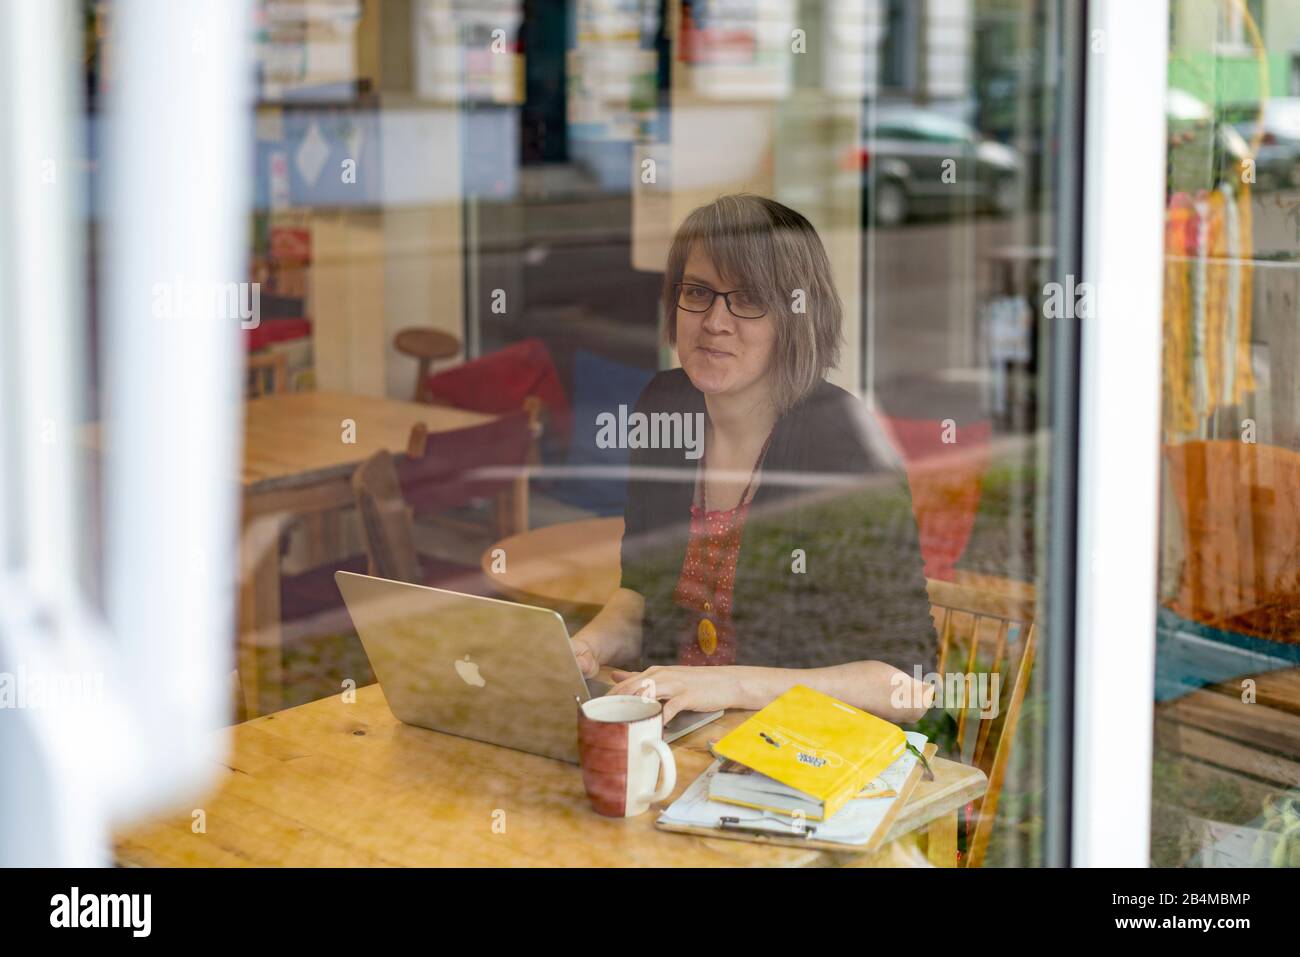 Junge Geschäftsfrau, sitzt vor einem Laptop, Inhaberin eines Unverpacktladens Stock Photo